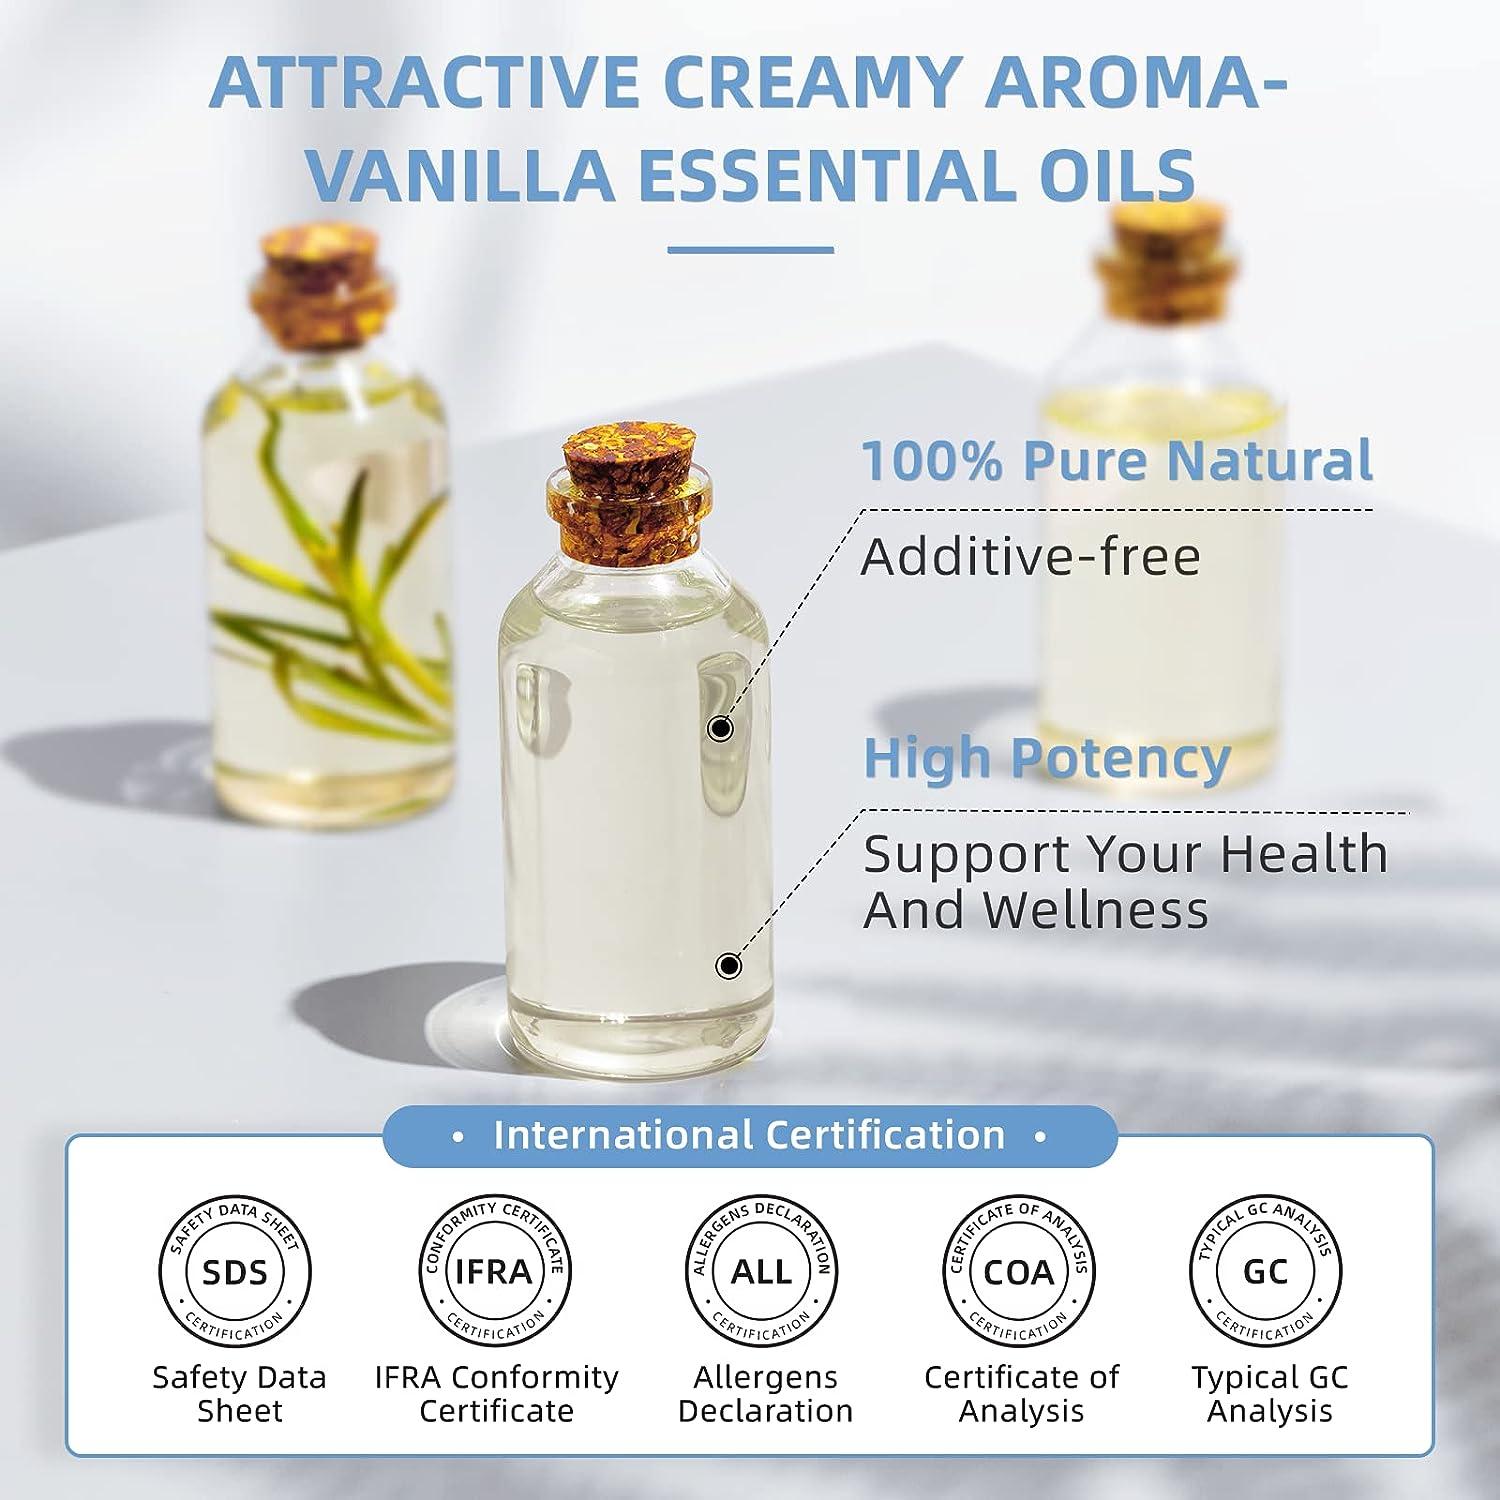 HIQILI Vanilla Essential Oil for Diffuser Skin Humidifier Perfume